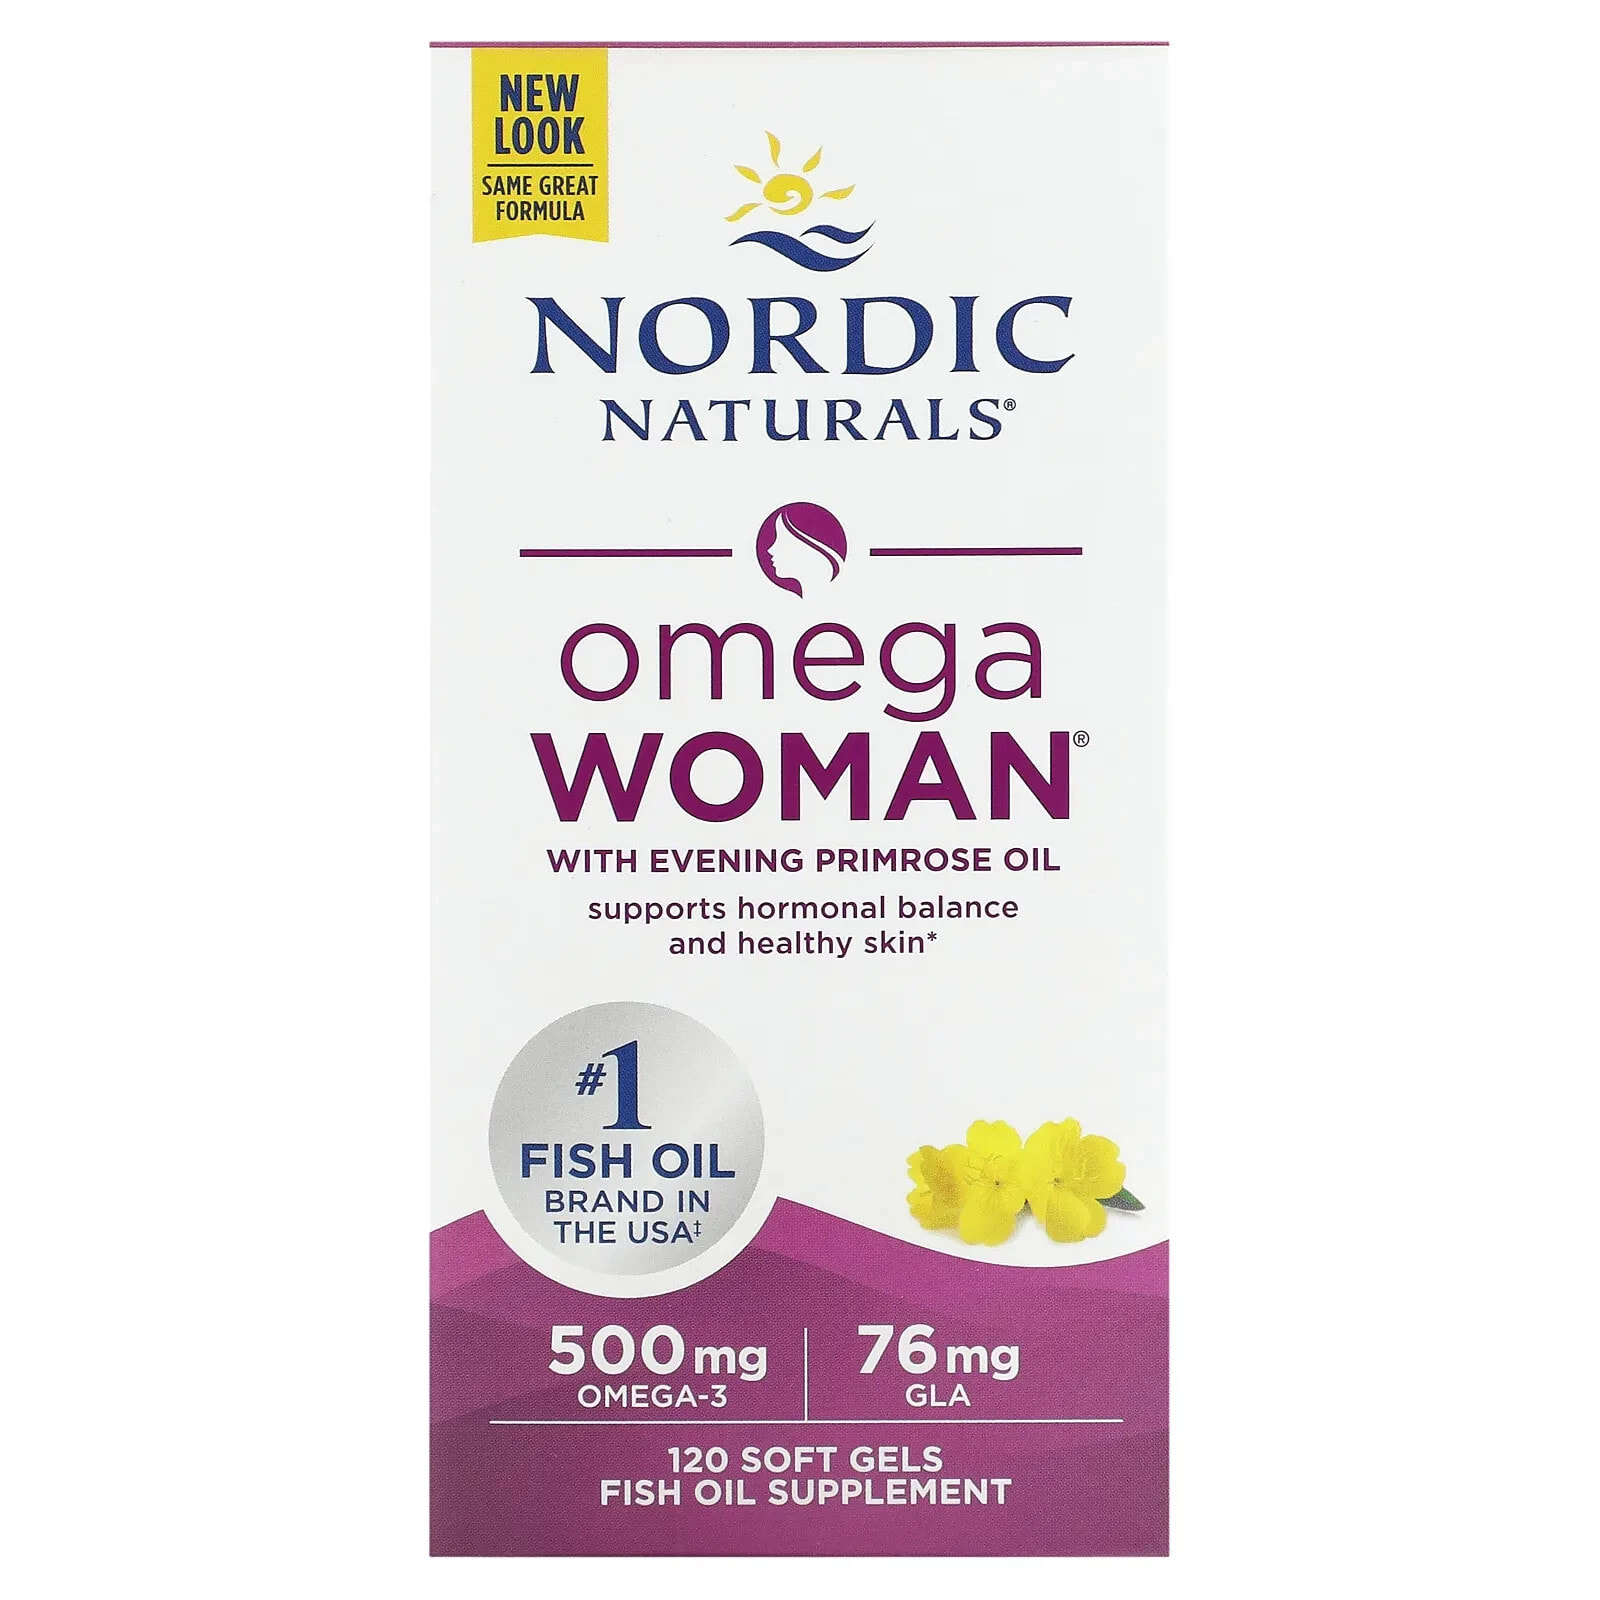 Нордик Натуралс, Omega Woman, с маслом примулы вечерней, 120 капсул